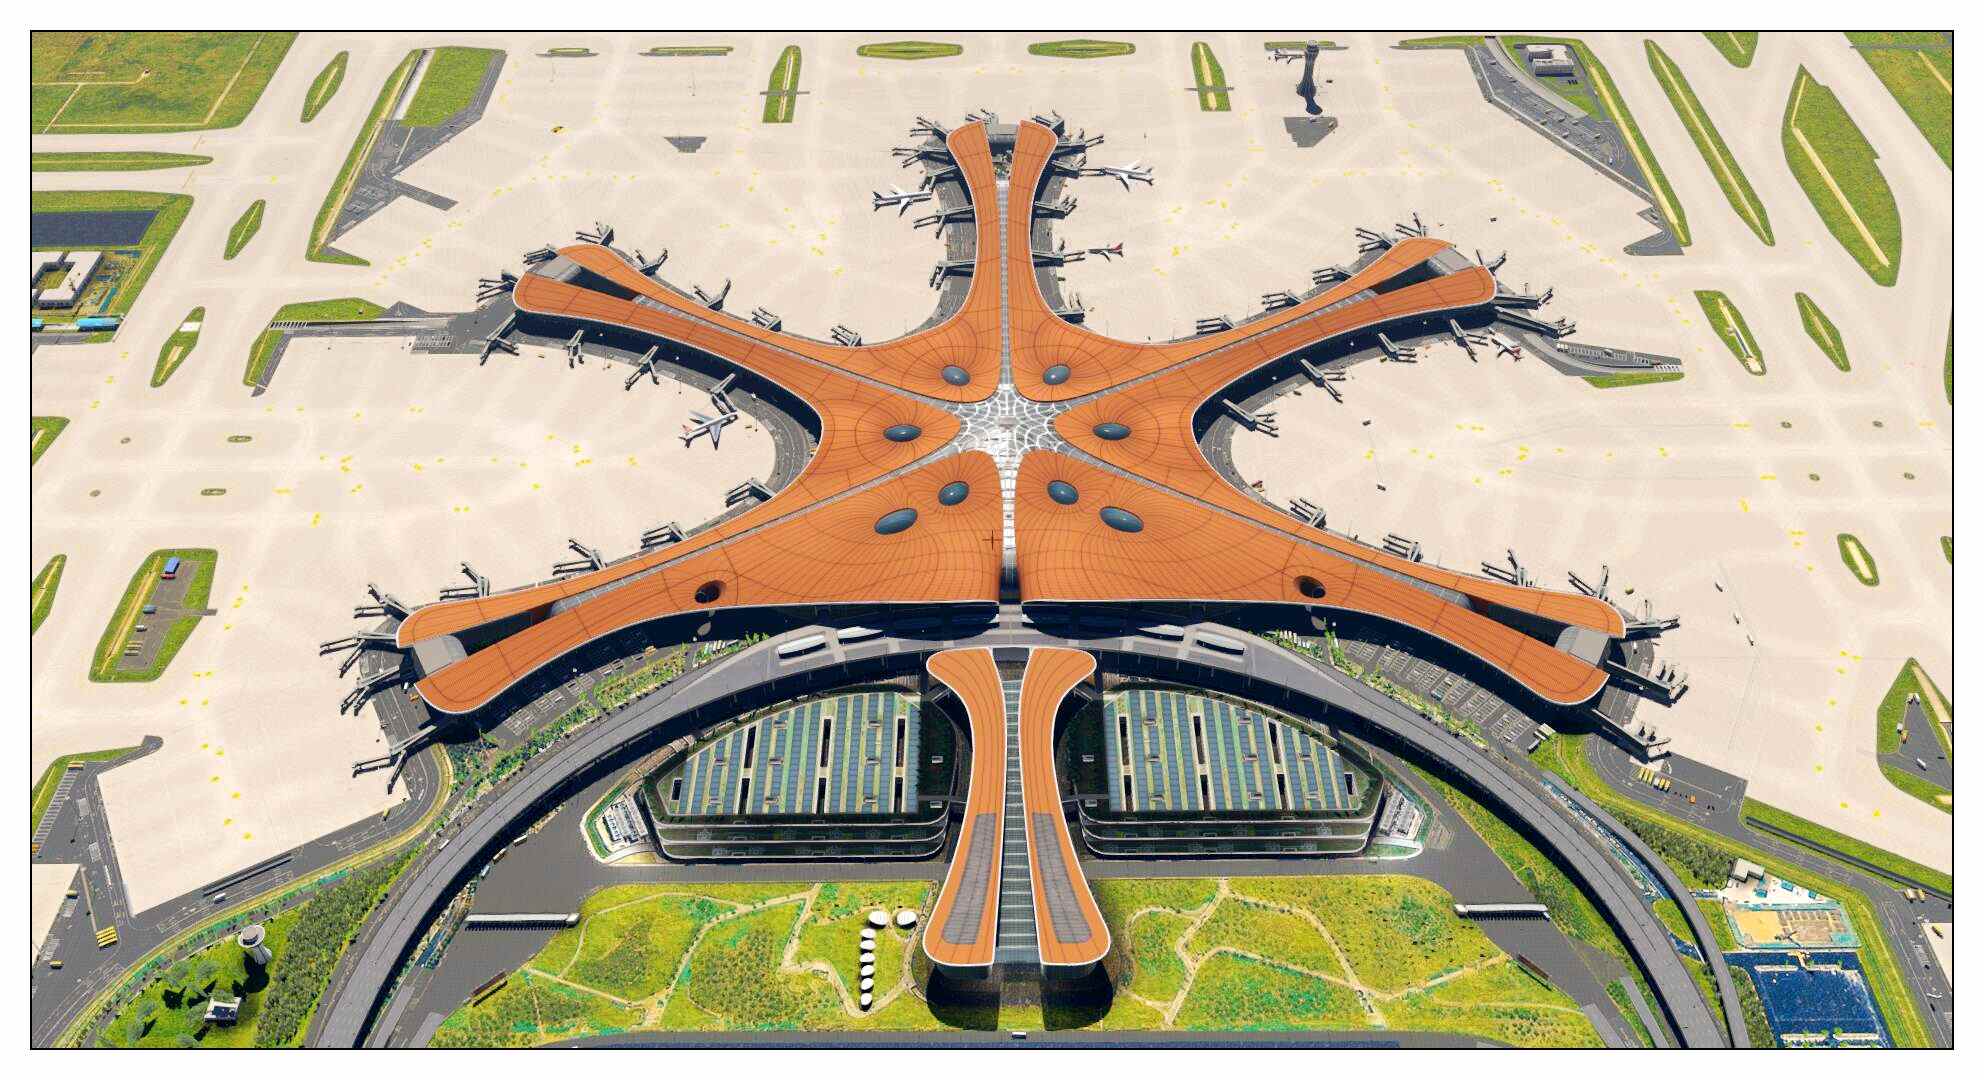 【X-Plane】ZBAD北京大兴国际机场-正式发布-5527 